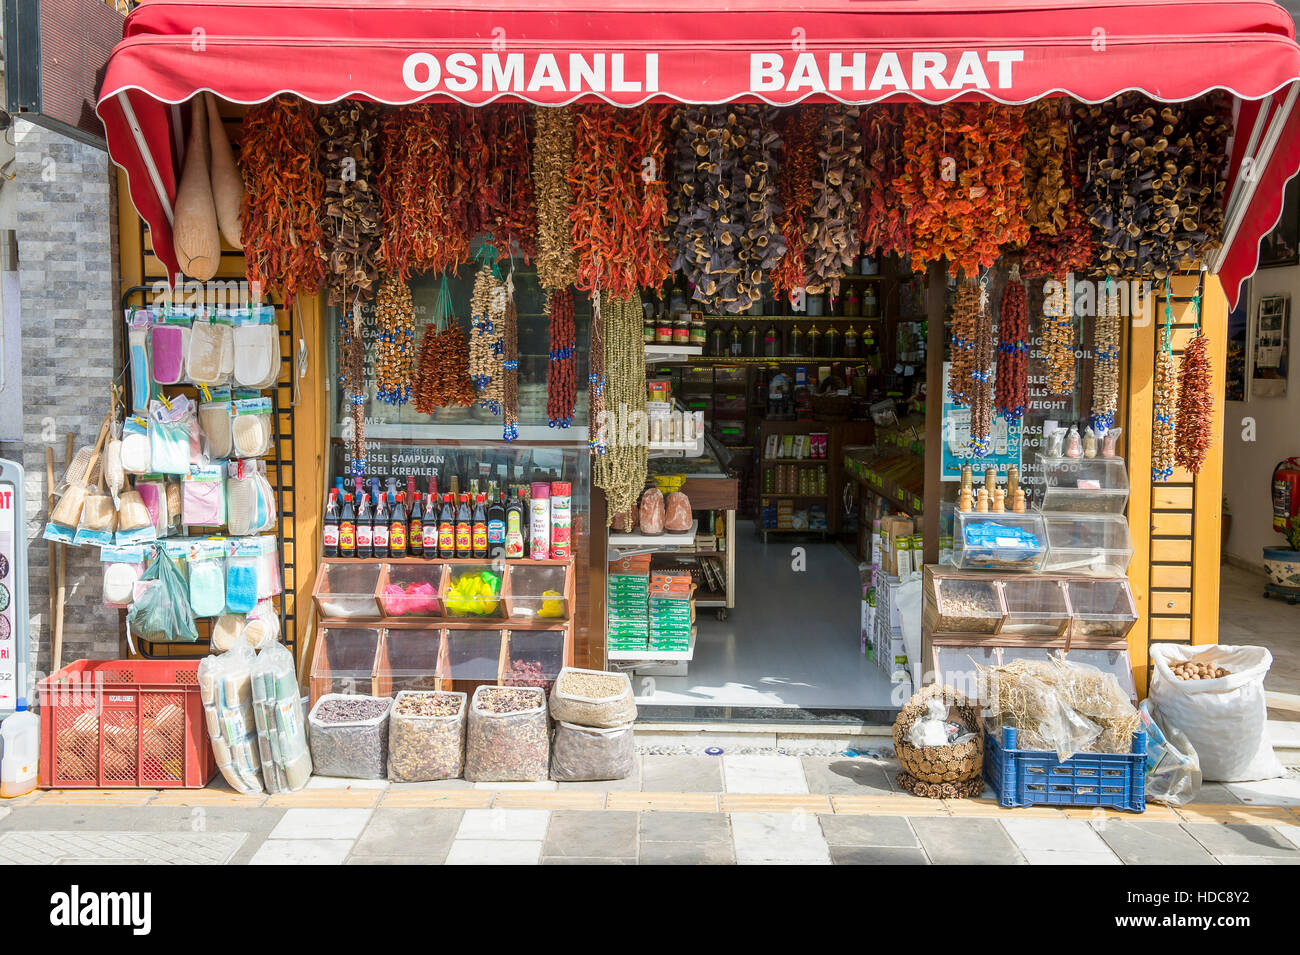 BODRUM, Türkei - 6. Oktober 2016: Stränge der getrockneten Paprika hängen schmücken die Front eines Shops verkaufen Gewürze und Speiseöle. Stockfoto